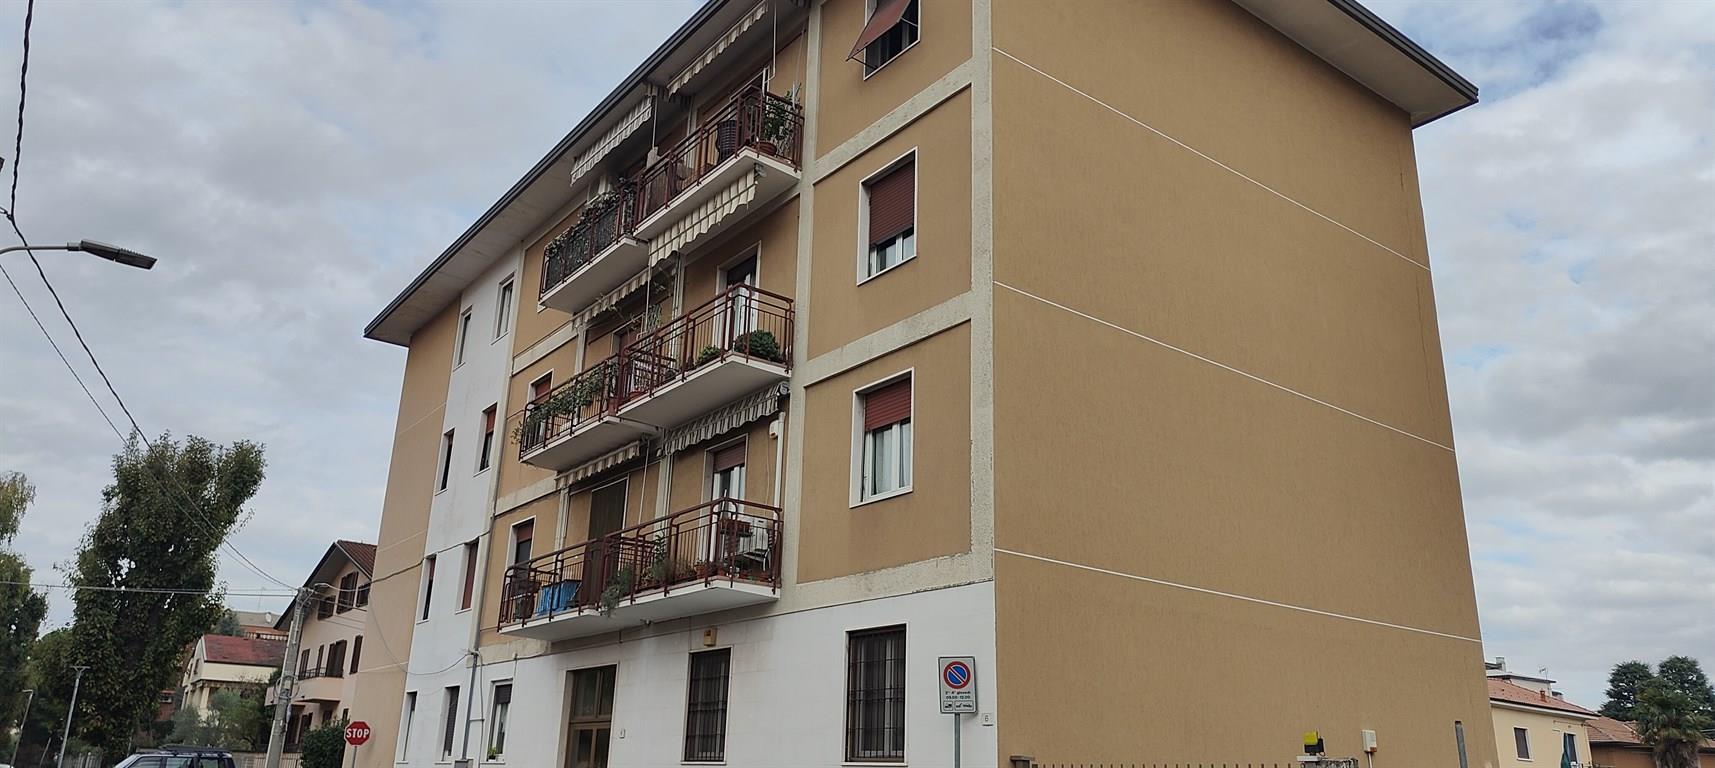 Vendita Trilocale Appartamento San Vittore Olona locati 8 454295